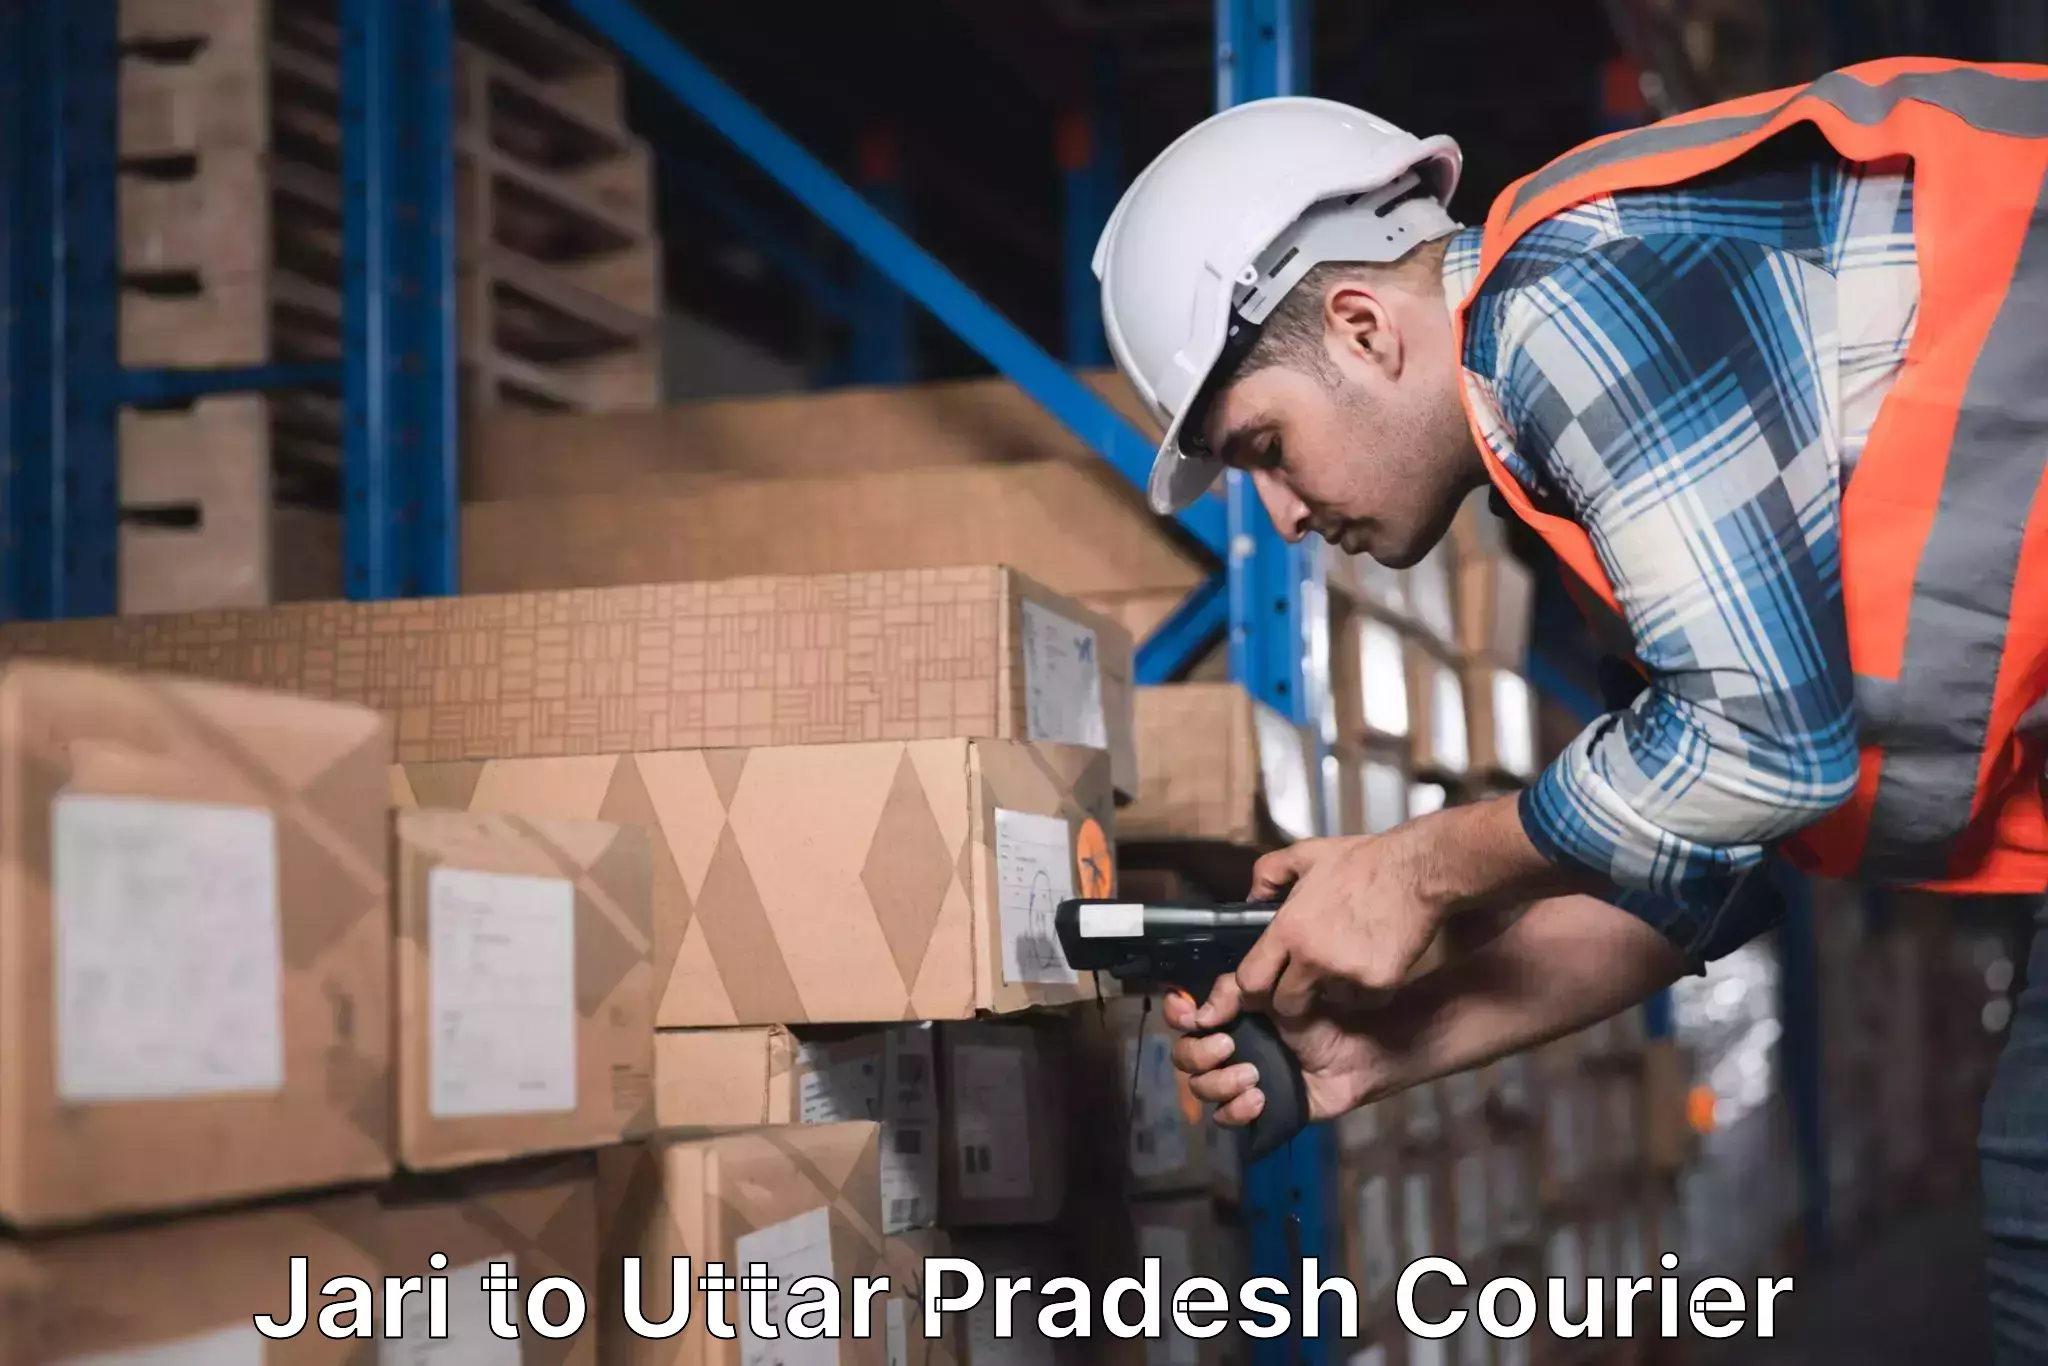 Reliable parcel services Jari to Cholapur